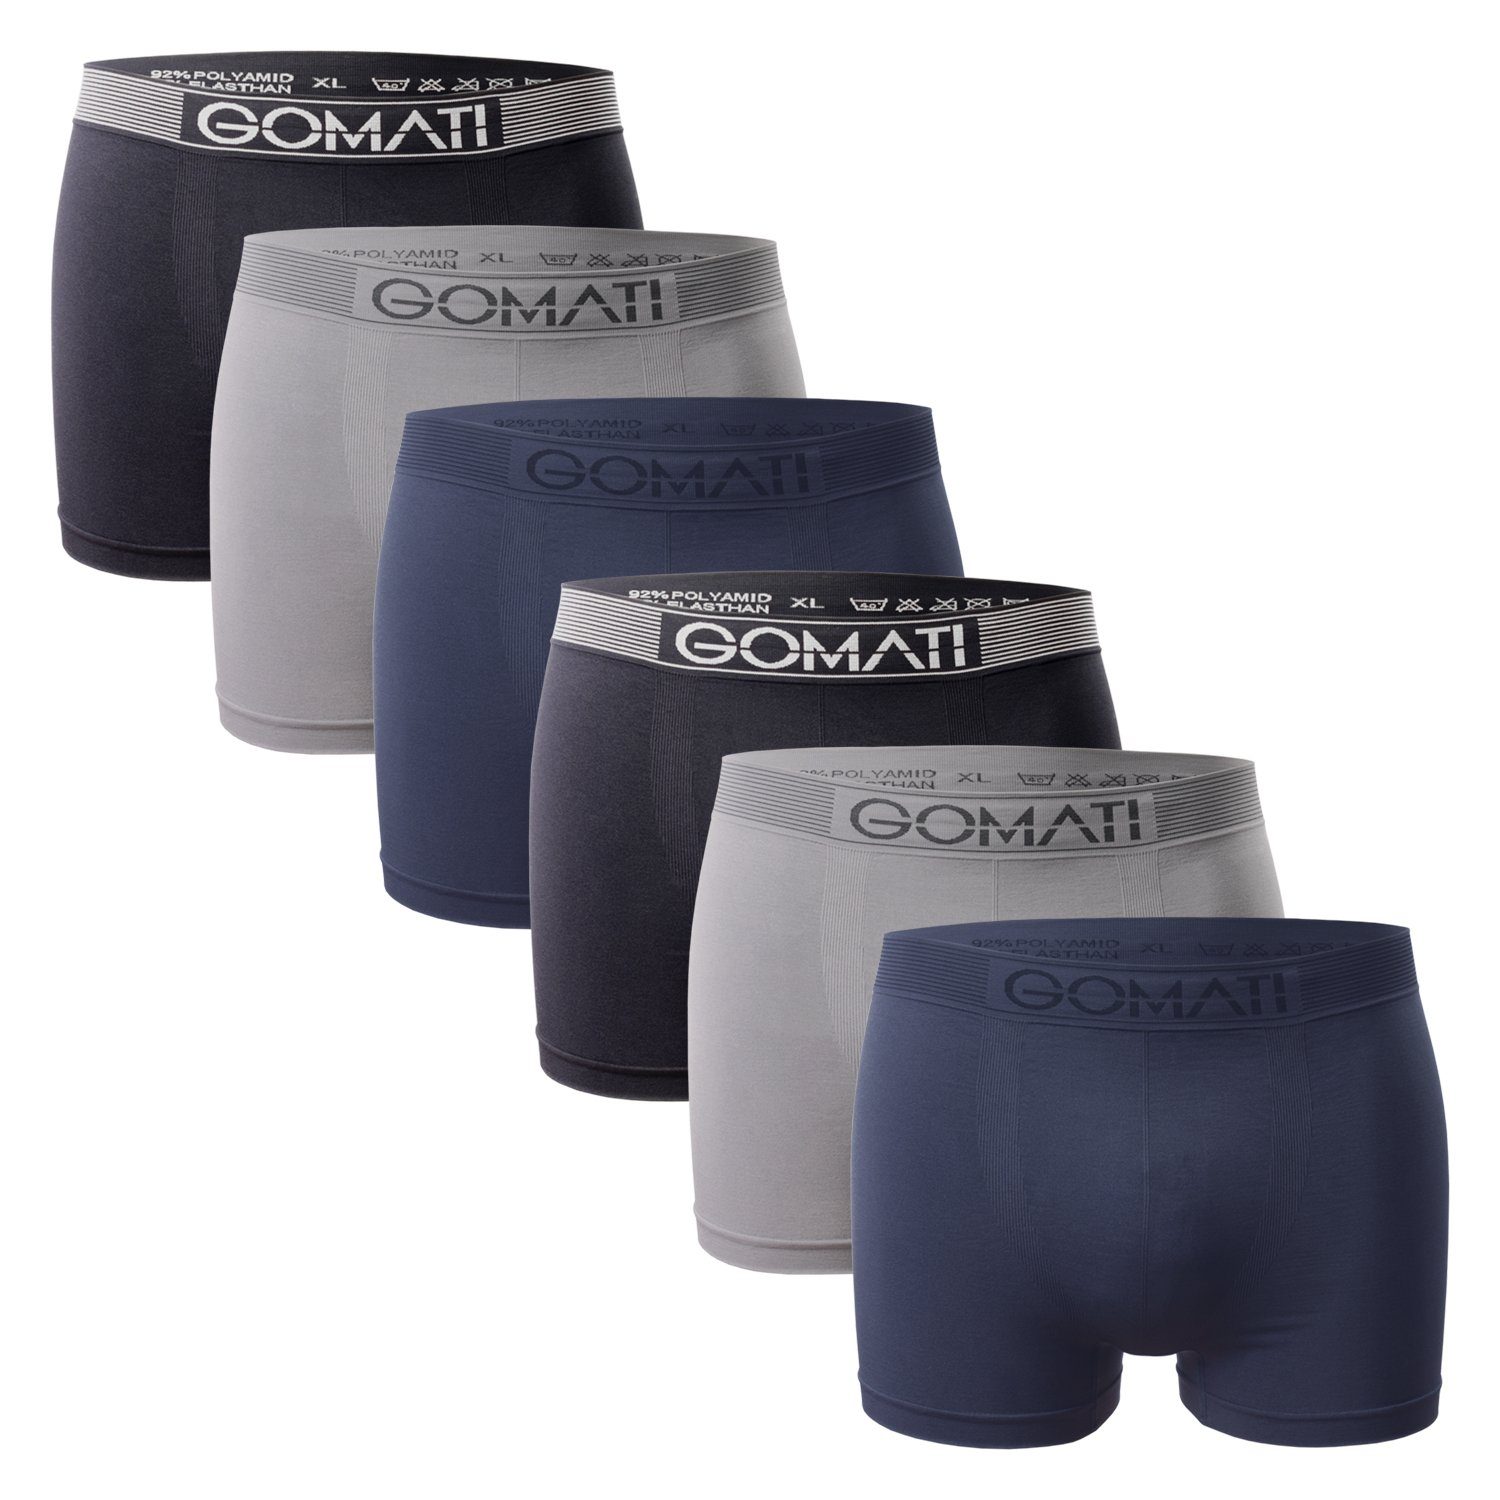 Gomati Boxershorts Herren Seamless Pants (6er Pack) Microfaser-Elasthan Boxershorts Grey Tones